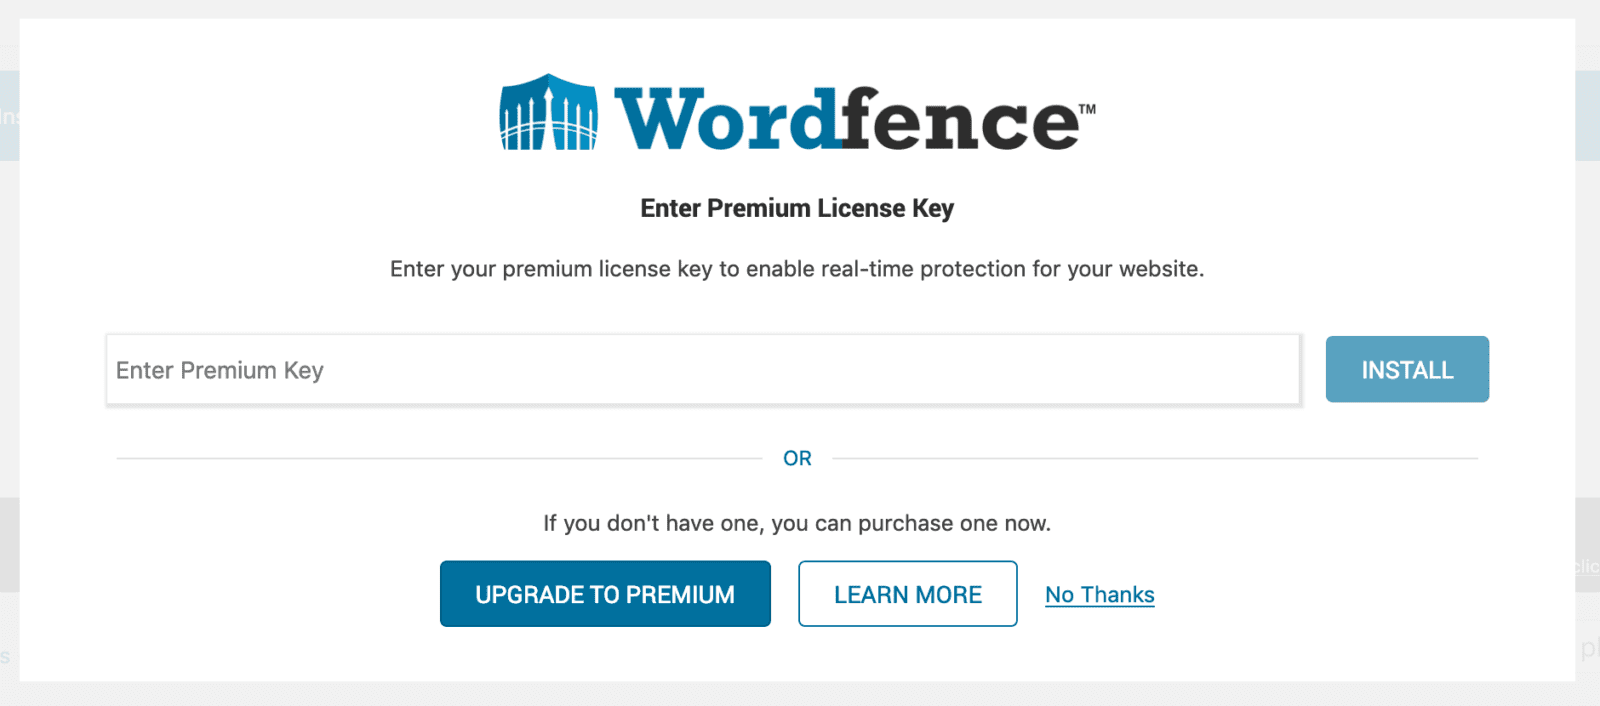 Descargar WordPress y configurar wordfence